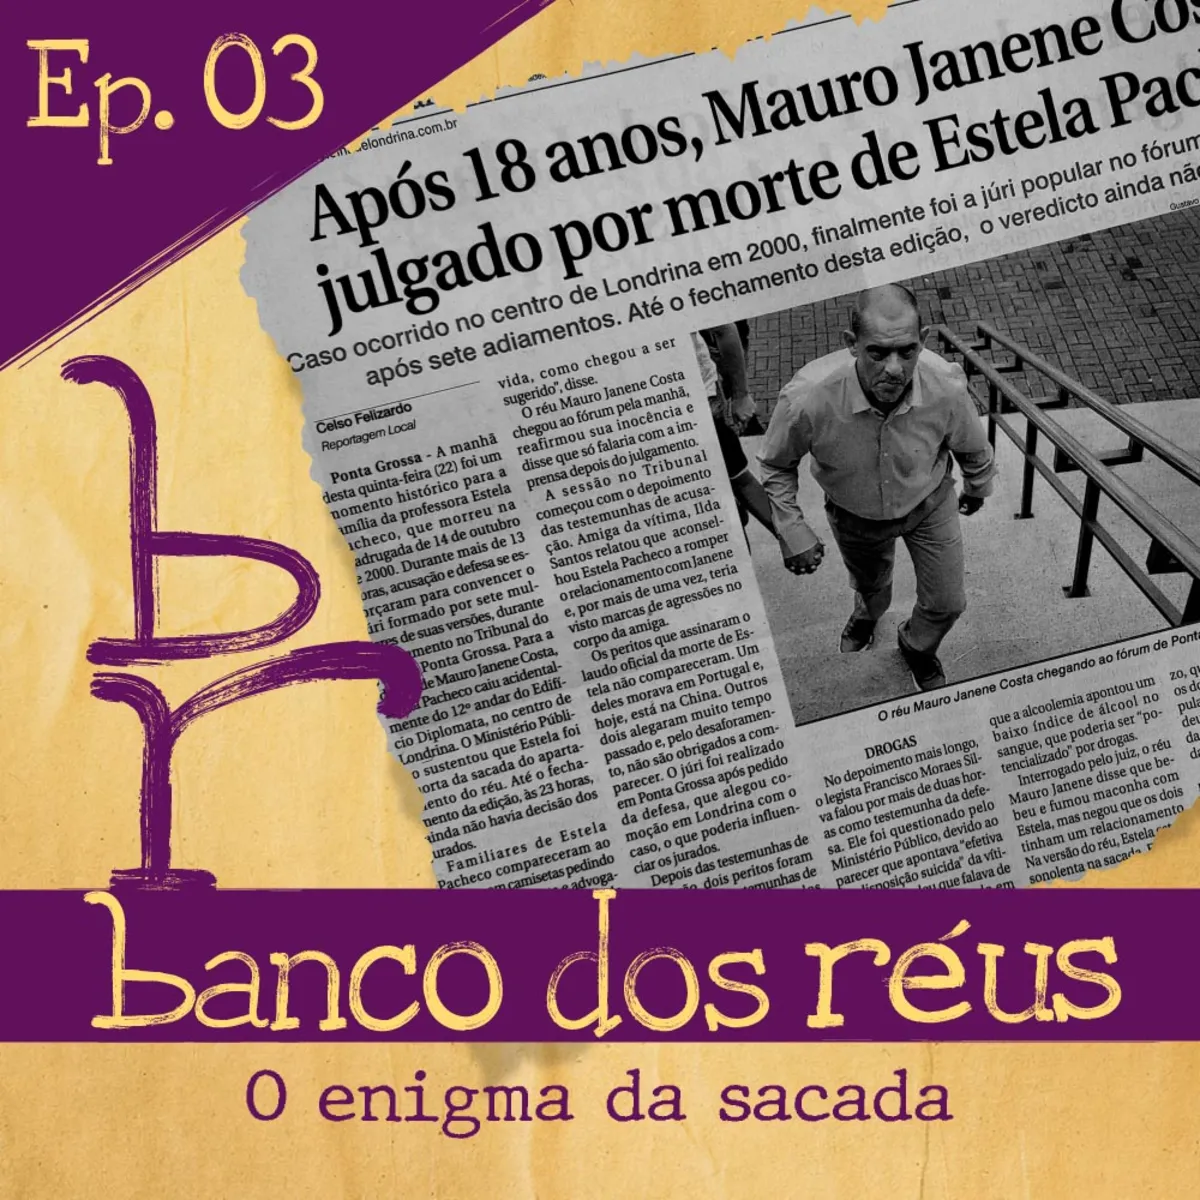 Imagem ilustrativa da imagem "Banco dos Réus" traz como conteúdo extra entrevista com Mauro Janene